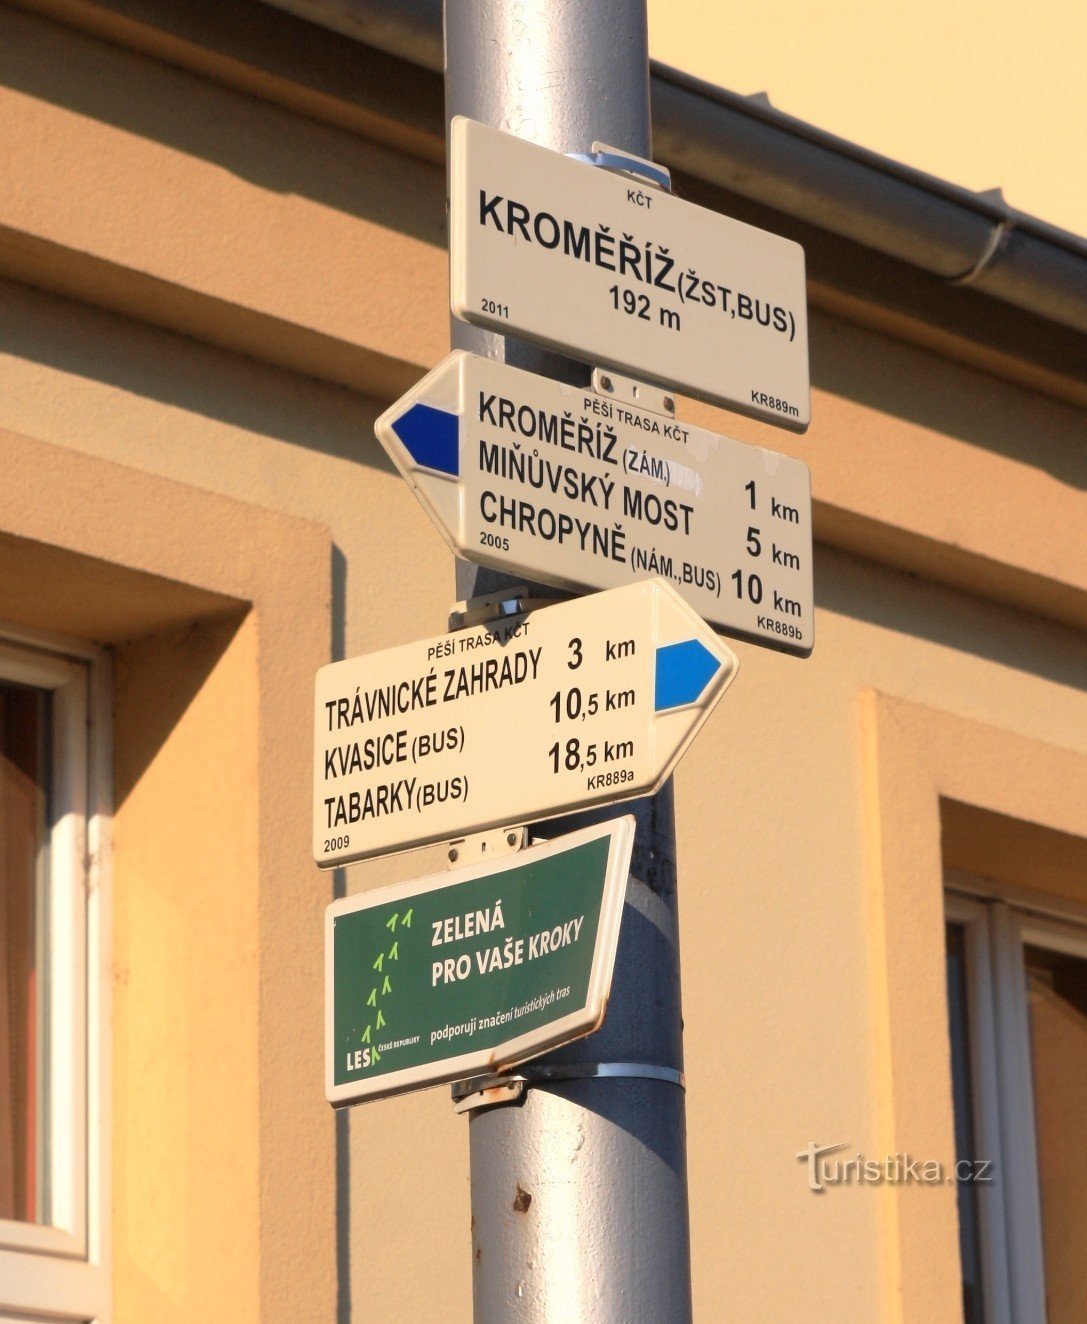 Τουριστικό σταυροδρόμι Kroměříž nádraží